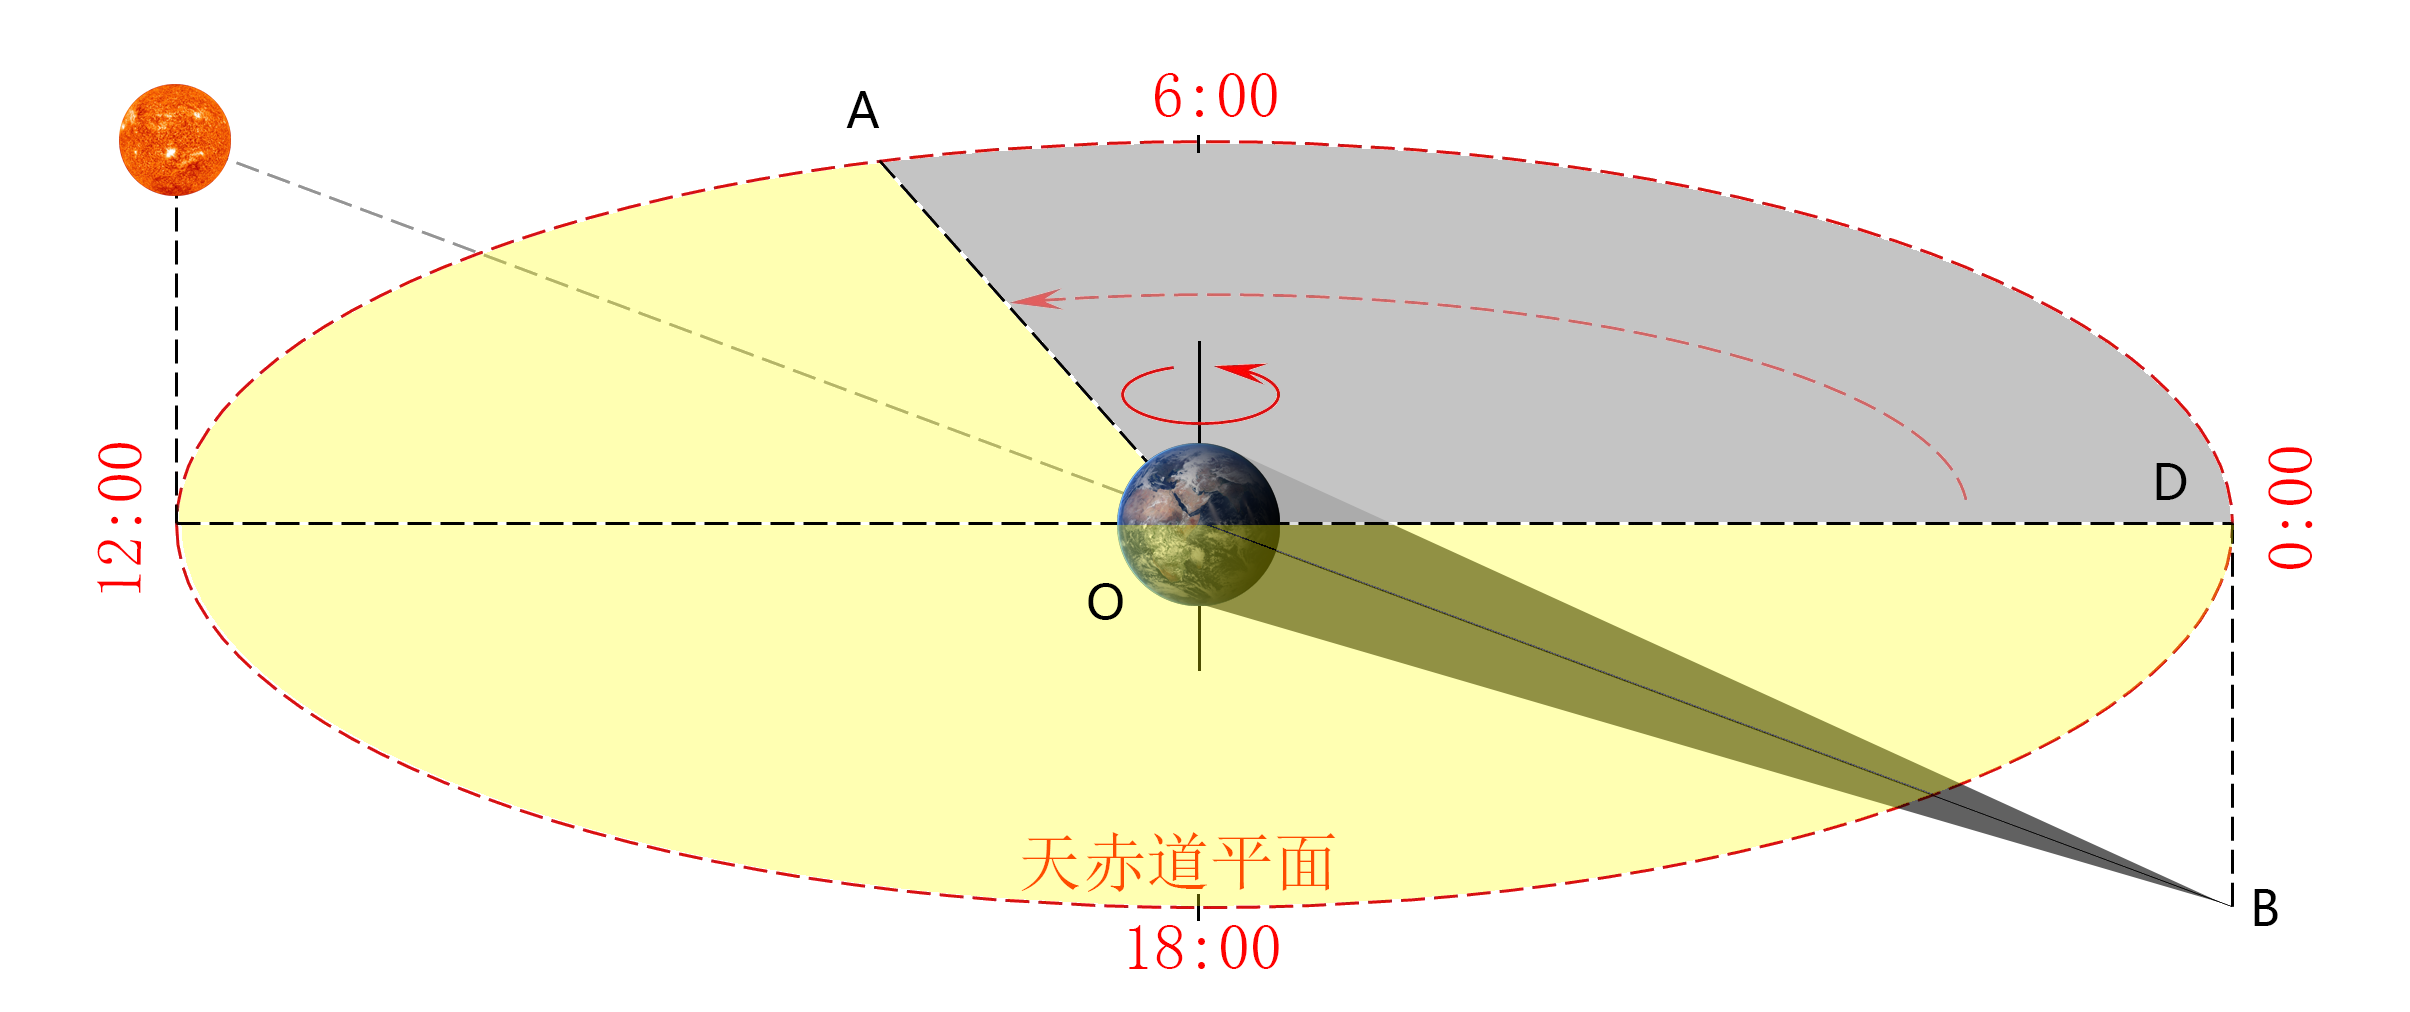 日晷投影原理图片